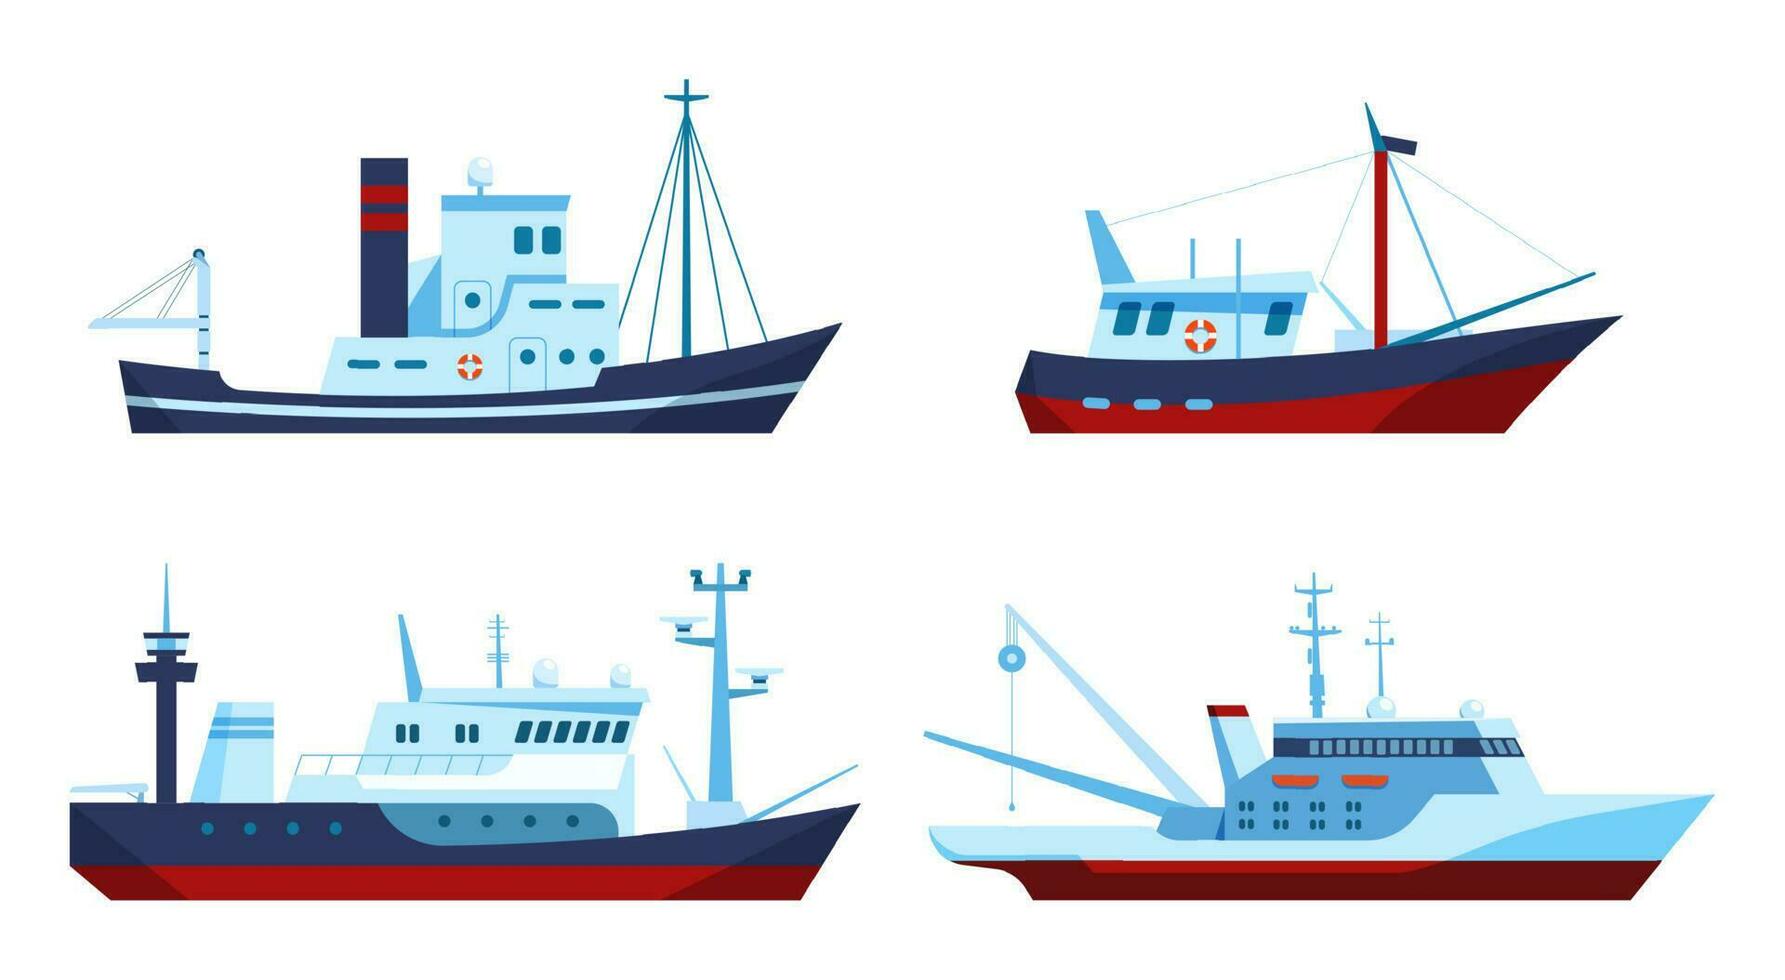 visvangst boten. schepen met uitrusting voor vangen vis en vervoer. voertuigen voor water reis met touwen vector